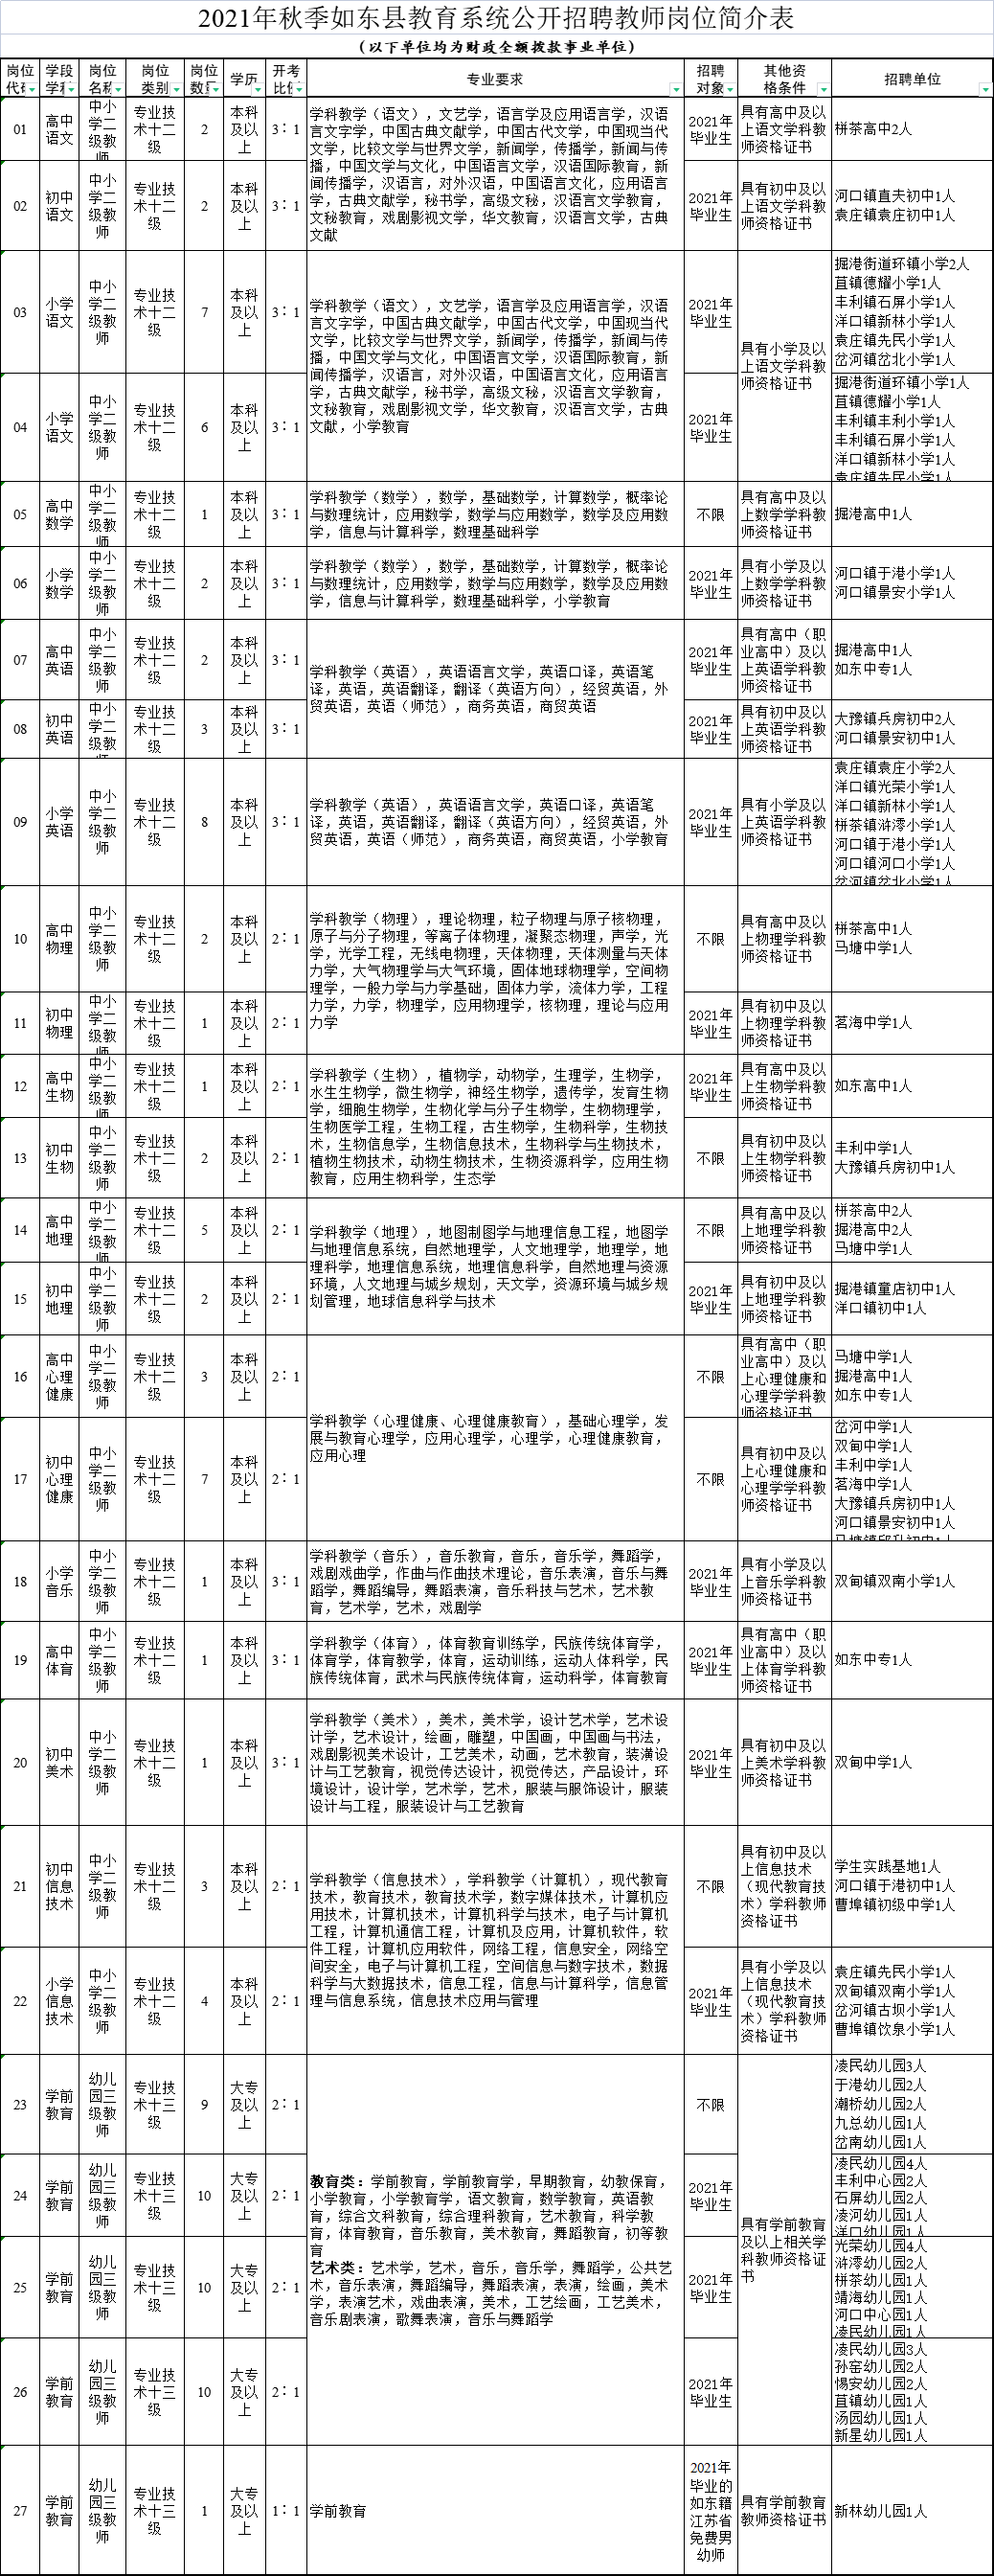 2021年秋季如东县教育系统公开招聘教师岗位简介表